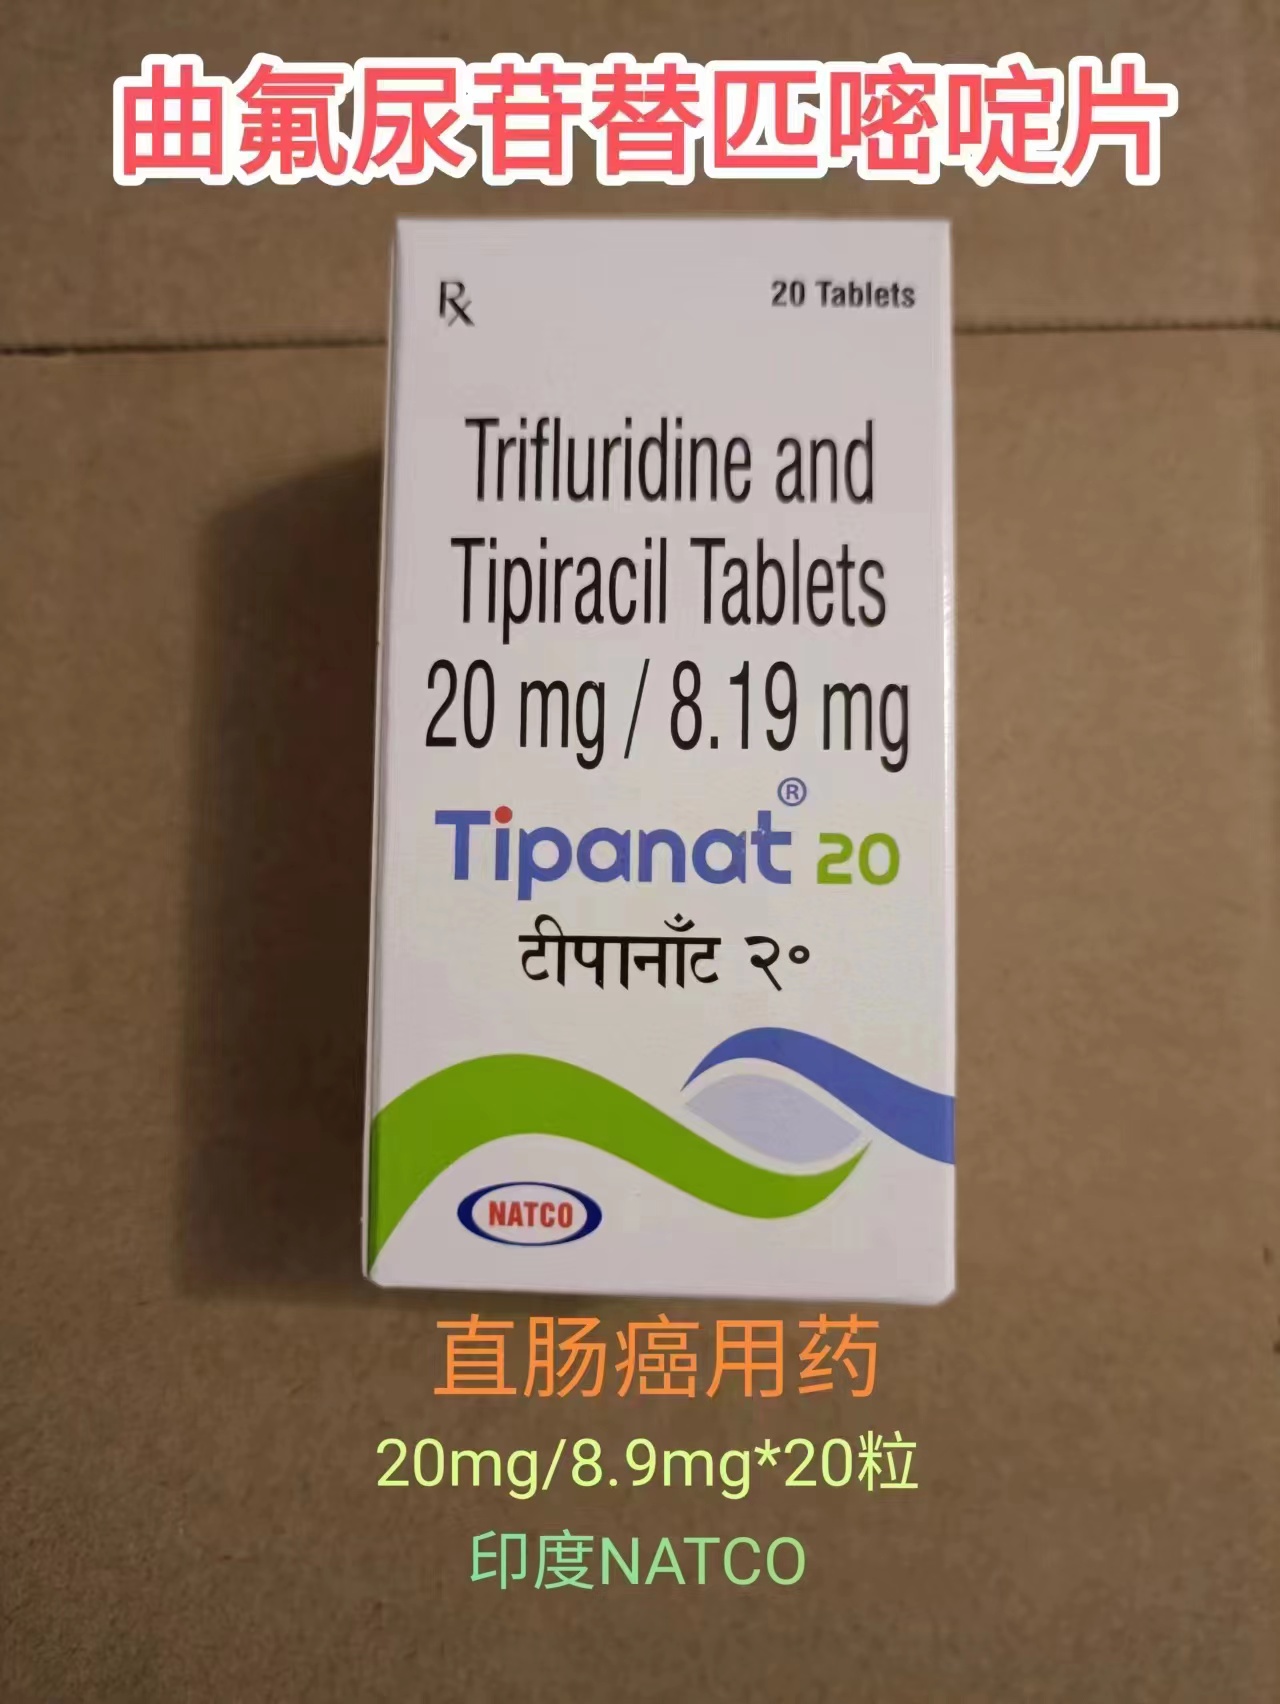 曲氟尿苷替匹嘧啶印度